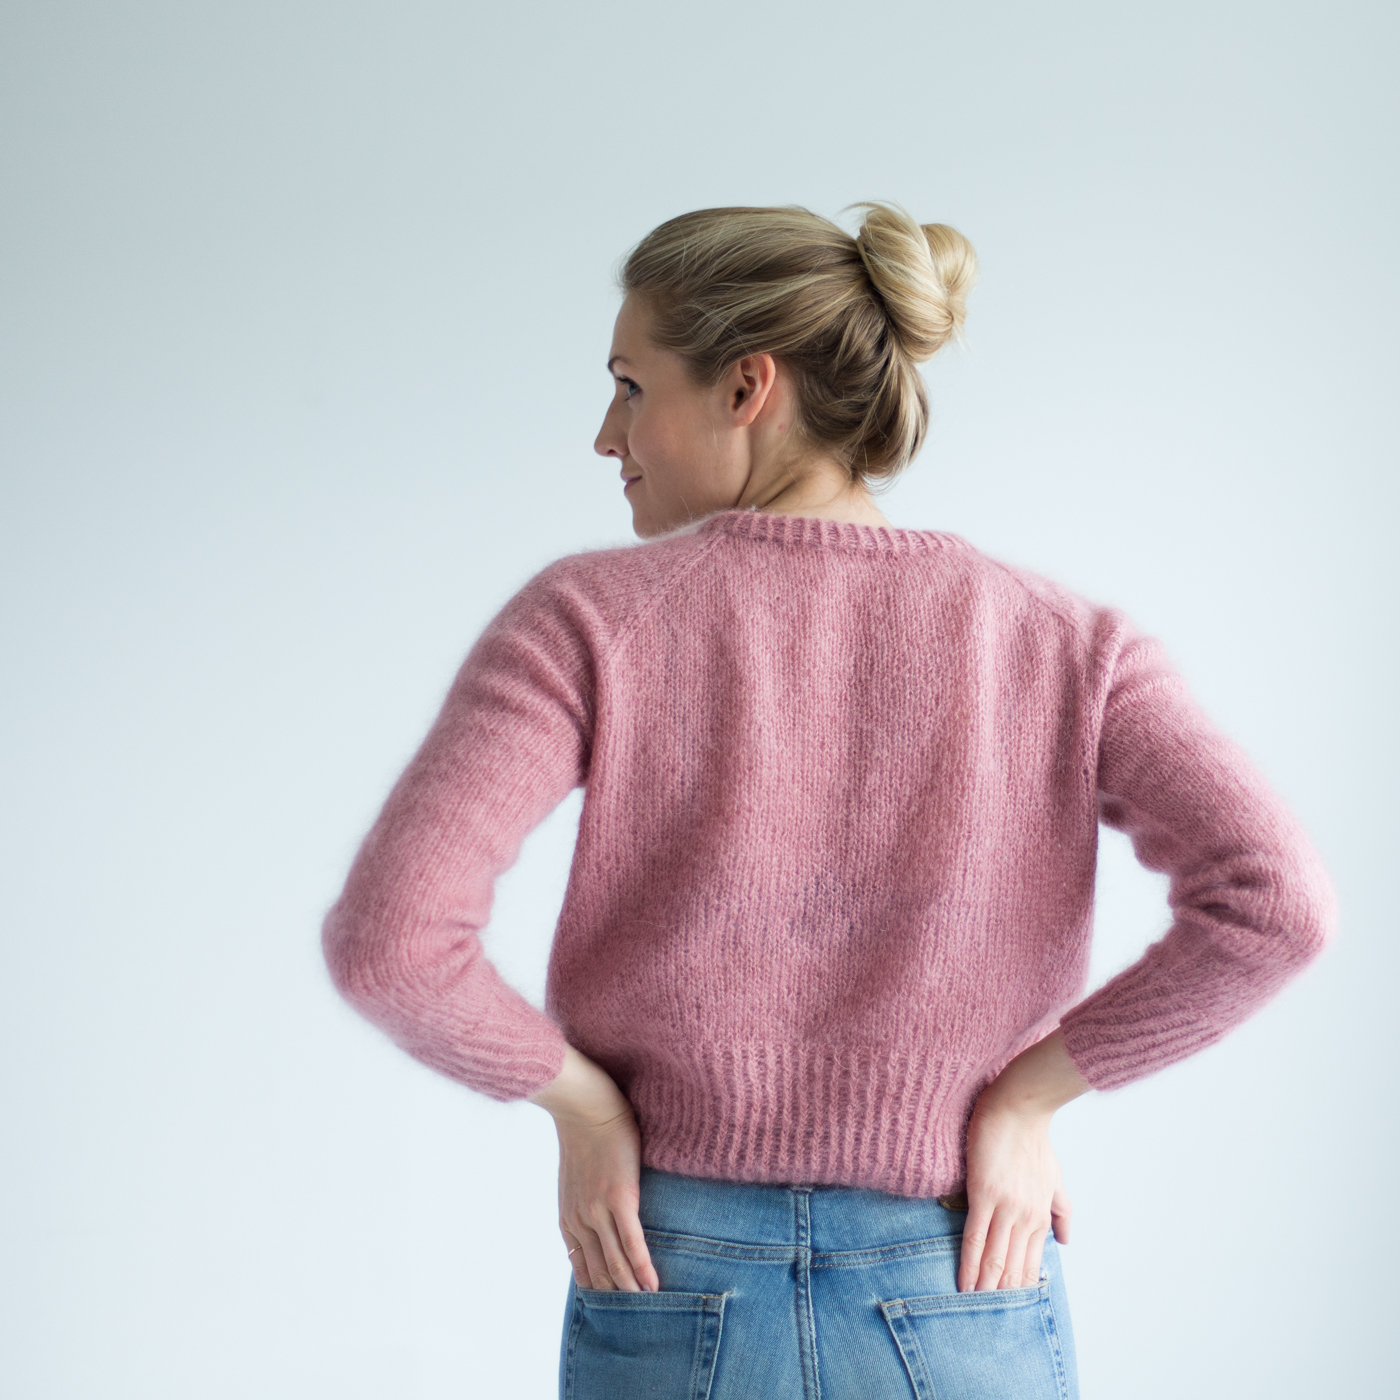 knitting pattern easy sweater women - Eben Sweater | Basic sweater women knitting kit - by HipKnitShop - 29/06/2018